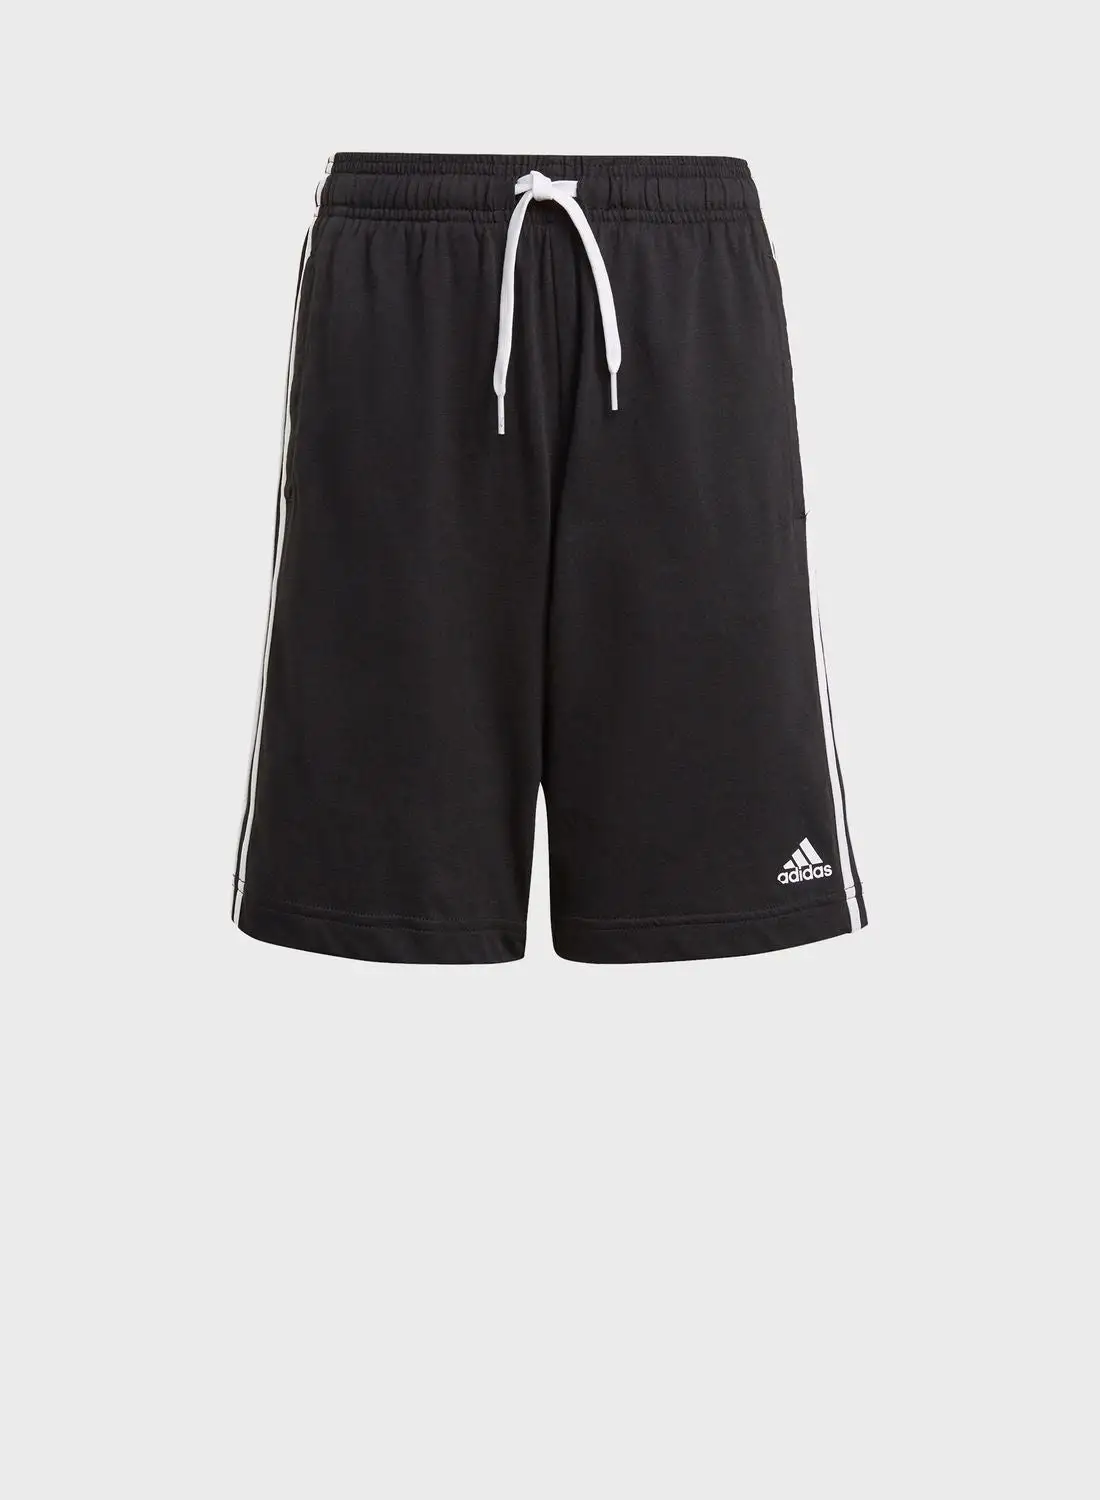 Adidas Youth 3 Stripe Shorts